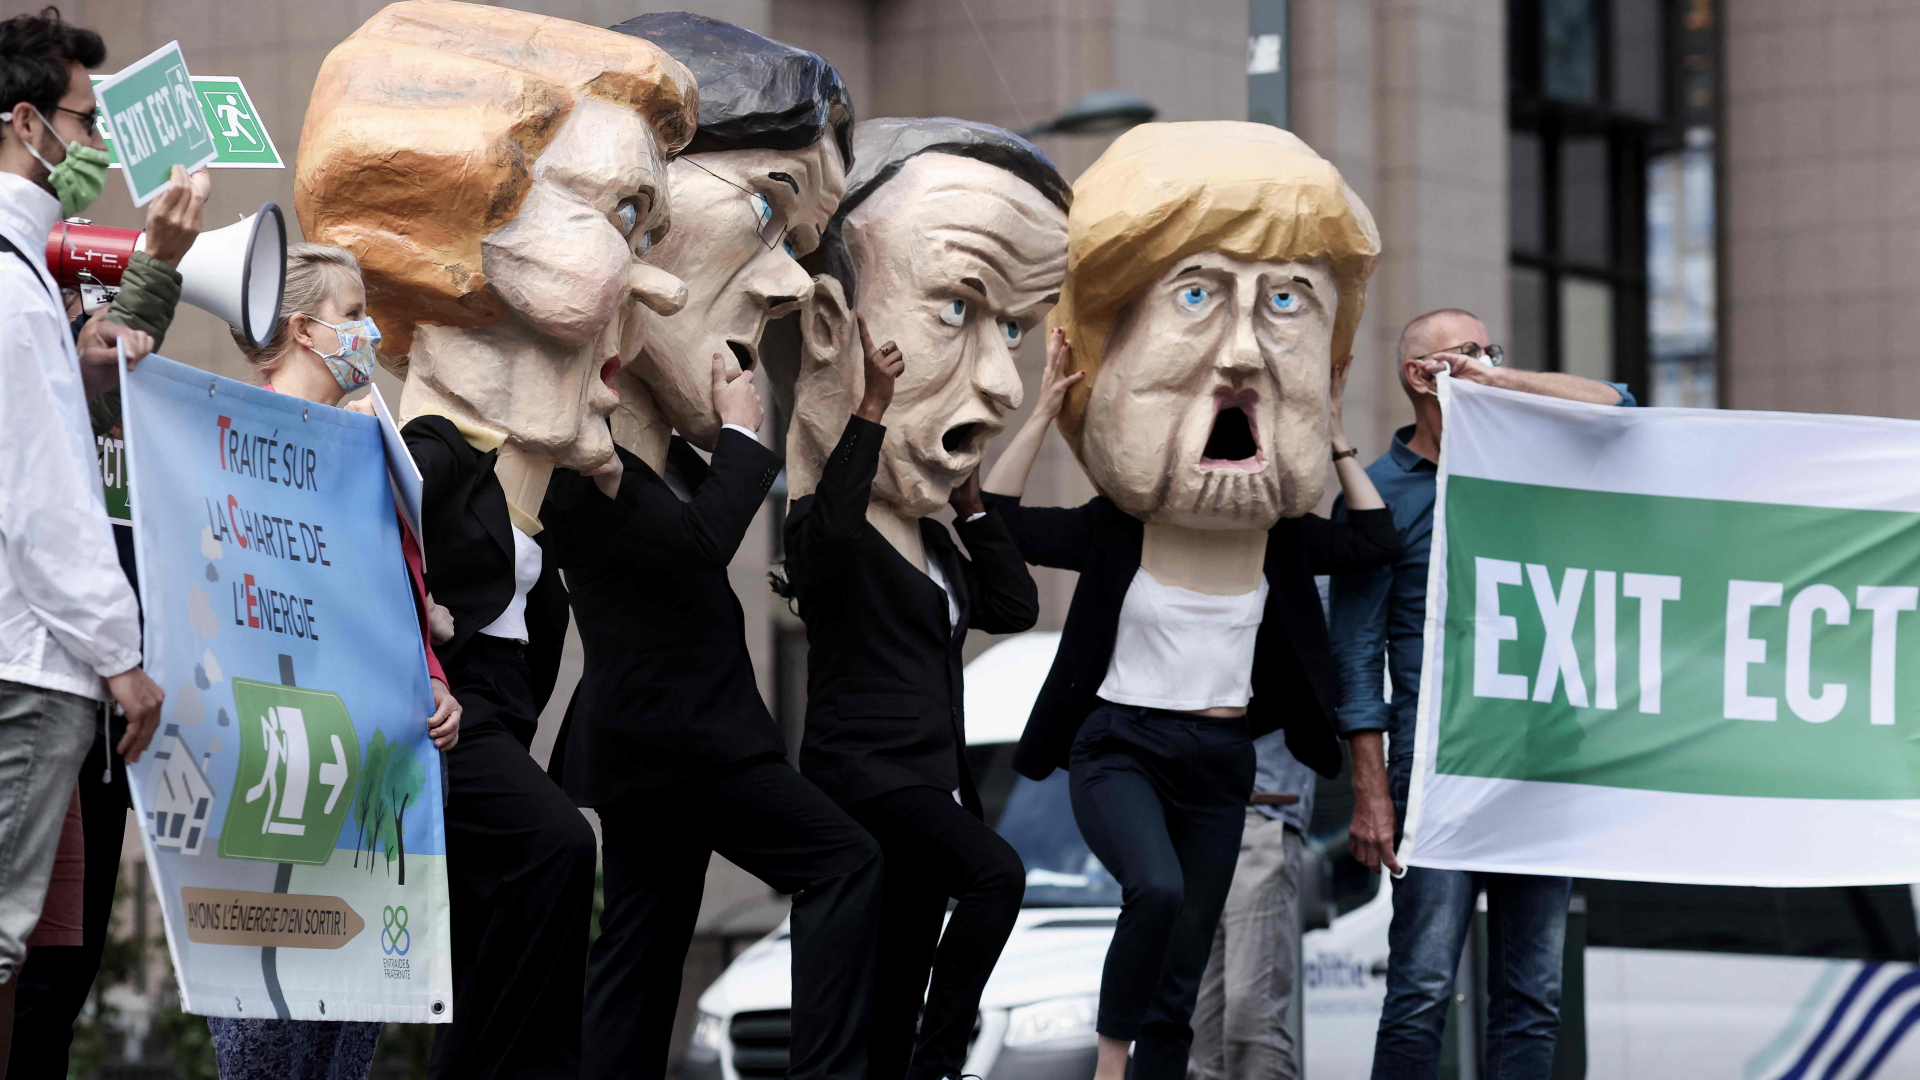 Klimaaktivisten mit Masken der EU-Politiker Ursula von der Leyen, Mark Rutte, Emmanuel Macron und Angela Merkel  | AFP